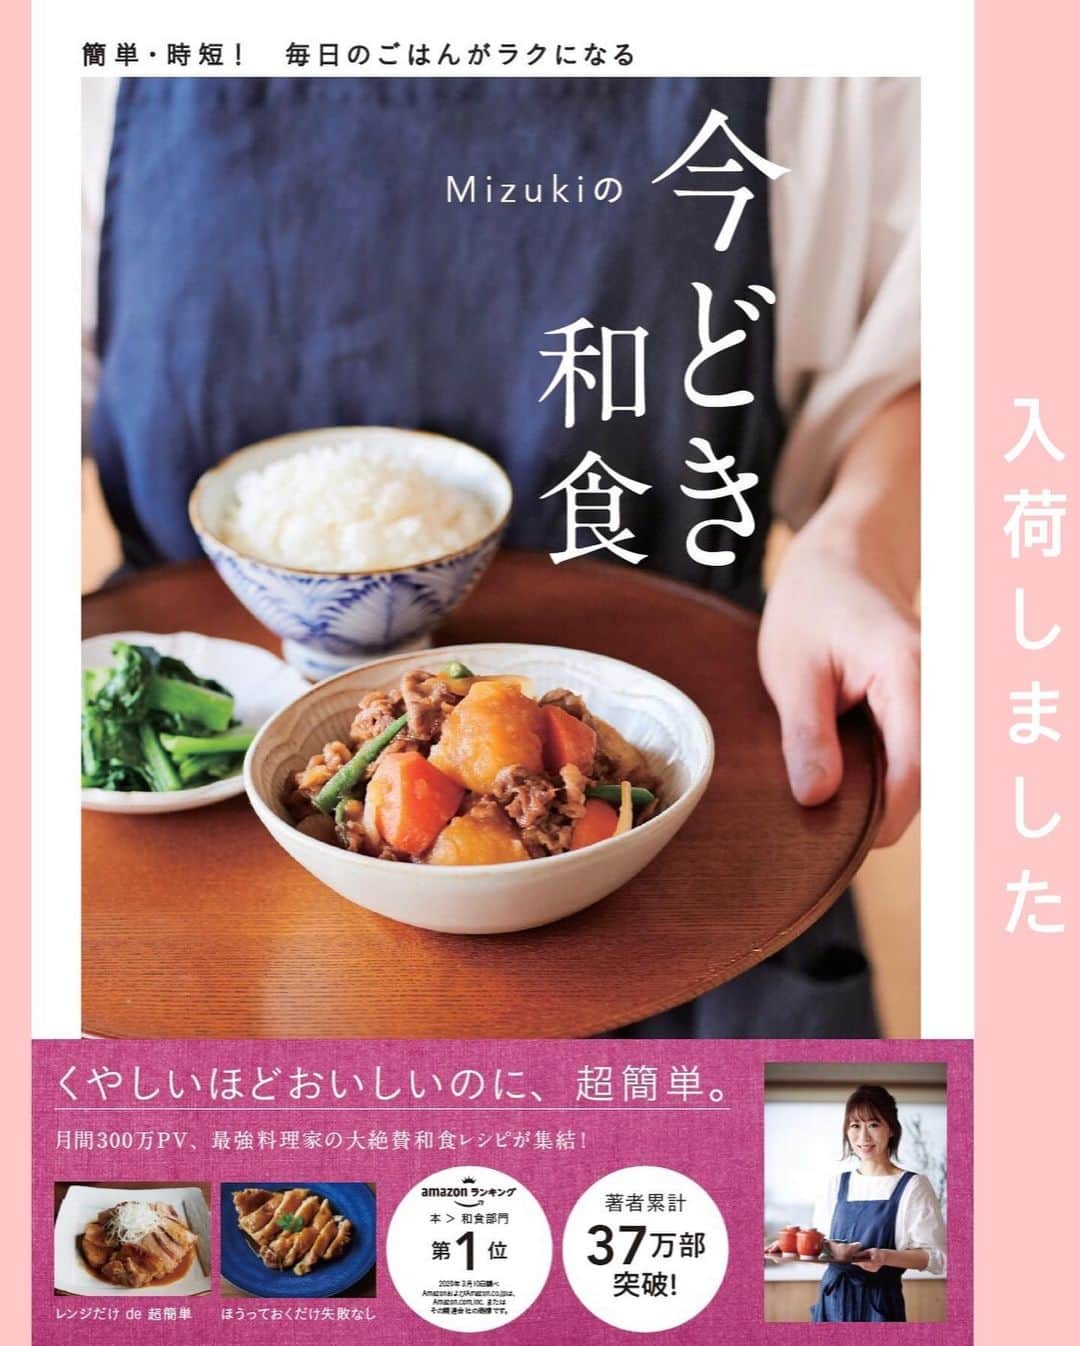 Mizuki【料理ブロガー・簡単レシピ】さんのインスタグラム写真 - (Mizuki【料理ブロガー・簡単レシピ】Instagram)「・﻿ 【レシピ】ーーーーーーーーーー﻿ ♡こってり甘辛肉味噌うどん♡﻿ ーーーーーーーーーーーーーーー﻿ ﻿ ﻿ ﻿ おはようございます(*^^*)﻿ ﻿ 今日はやみつき麺レシピ！﻿ 肉味噌うどんのご紹介です♩﻿ ﻿ (毎年やってますが•••笑)﻿ これとってもおすすめ(*´艸`)﻿ こってり甘辛い肉味噌と﻿ シャキシャキきゅうりが相性抜群！﻿ うどん一玉では足りないくらい﻿ やみつきになる味わいですよ♡﻿ ﻿ ちなみに、今回はうどんですが﻿ そうめんや中華麺、ごはんにも合うので﻿ よかったらお試し下さいね(*^^*)﻿ お酢やラー油をかけても美味しいです♩﻿ ﻿ ﻿ ﻿ ーーーーーーーーーーーーーーーーーーーー﻿ 【2人分】﻿ 冷凍うどん...2玉﻿ きゅうり...1本﻿ 合びき肉...150g﻿ ●水...50ml﻿ ●砂糖・醤油・酒・味噌...各大1﻿ ●片栗粉...小1﻿ ●にんにく・生姜...各チューブ2cm﻿ ごま油...小1﻿ (好みで)卵黄...2個﻿ ﻿ 1. 冷凍うどんはレンジで加熱し、流水で冷やして水気を切る。きゅうりは千切りにする。●は合わせておく。﻿ 2.フライパンにごま油を入れて中火で熱し、ひき肉を炒める。火が通ったら●を加え、混ぜながらとろみを付ける。﻿ 3.器にうどんを盛り、きゅうり、2の順にのせ、卵黄をトッピングする。﻿ ーーーーーーーーーーーーーーーーーーーー﻿ ﻿ ﻿ ﻿ 《ポイント》﻿ ♦︎お好みでお酢やラー油をかけても美味しいです♩﻿ ♦︎合びき肉の代わりに豚ひき肉で作っても♩﻿ ﻿ ﻿ ﻿ ﻿ ﻿ ﻿ ﻿ 🔻入荷しました🔻﻿ ストーリーにリンク貼っています🙇‍♀️﻿ ＿＿＿＿＿＿＿＿＿＿＿＿＿＿＿＿＿＿＿﻿ 📕\ \ 新刊発売中 / /📕﻿ 簡単・時短！ 毎日のごはんがラクになる﻿ ✨🦋 【 #Mizukiの今どき和食 】🦋✨﻿ ＿＿＿＿＿＿＿＿＿＿＿＿＿＿＿＿＿＿＿﻿ ﻿ なるべく少ない材料で﻿ 手間も時間も省きながら﻿ 簡単にできるおいしい和食レシピ♩﻿ 簡単に失敗なくマスターできる一冊で﻿ もっと気軽に、カジュアルに﻿ 和食を楽しんで下さいね(*^^*)﻿ ﻿ ﻿ ーーー ⭐️PART.1 メインおかず ⭐️ーーー﻿ 素材別にレシピをご紹介しています♩﻿ 和食の定番から新定番まで﻿ どれも押さえておきたいメニューばかり。﻿ 肉じゃがはフライパンで！焼き豚はレンジで！﻿ ぶり大根は切り身を使って手軽に作ります♩﻿ ﻿ ーーー ☘️PART.2 サブおかず ☘️ーーー﻿ 年中手に入るお手頃野菜と﻿ 乾物や大豆、こんにゃくなどを使った﻿ 副菜レシピをたっぷり掲載！！﻿ 普段SNSではメインおかずばかりなので﻿ 本では副菜にも力を入れています(*^^*)﻿ ﻿ ーーー 🌸PART.3 ごはんと汁物 🌸ーーー﻿ ささっと作れる丼と麺、﻿ みんなで食べたいいなり寿司や﻿ 手巻きごはんもご紹介！﻿ 複数の炊き込みごはんと﻿ 味噌汁&和風スープも盛りだくさん！﻿ ﻿ ﻿ 各レシピのポイントは﻿ 【写真付きで丁寧に解説】﻿ 副菜レシピもたっぷりなので﻿ 【メインページに副菜メモもつけました】﻿ ＊このメインにはこの副菜が合いますよ〜﻿ という献立の提案です(*^^*)﻿ 【その他コラムも充実】﻿ 全127品中ほぼ全て﻿ 【本だけのレシピです！】﻿ ＿＿＿＿＿＿＿＿＿＿＿＿＿＿＿＿＿＿＿﻿ ﻿ ﻿ ﻿ ﻿ ﻿ ＿＿＿＿＿＿＿＿＿＿＿＿＿＿＿＿＿﻿ 🎀発売中🎀﻿ 【#ホットケーキミックスのお菓子 】﻿ ﻿ 一冊まるっとホケミスイーツ♩﻿ 普段のおやつから﻿ 特別な日にも使えるレシピを﻿ この一冊に詰め込みました(*^^*)﻿ ホットケーキミックスを使えば﻿ 簡単に本格的なお菓子が作れますよ♡﻿ ＿＿＿＿＿＿＿＿＿＿＿＿＿＿＿＿＿﻿ ﻿ ⭐️ストーリー、ハイライト、プロフ画面に﻿ 本のURLを貼らせていただいております♩﻿ →(@mizuki_31cafe )﻿ ﻿ ﻿ ﻿ ﻿ #ひき肉#肉味噌#肉味噌うどん#ジャージャーうどん#冷凍うどん#うちで過ごそう#おうち時間#Mizuki#簡単レシピ#時短レシピ#節約レシピ#料理#レシピ#フーディーテーブル#マカロニメイト#おうちごはん#デリスタグラマー#料理好きな人と繋がりたい#おうちごはん#lover#foodpic#follow#cooking#recipe#lin_stagrammer#stayhome#こってり甘辛肉味噌うどんm」6月4日 6時52分 - mizuki_31cafe